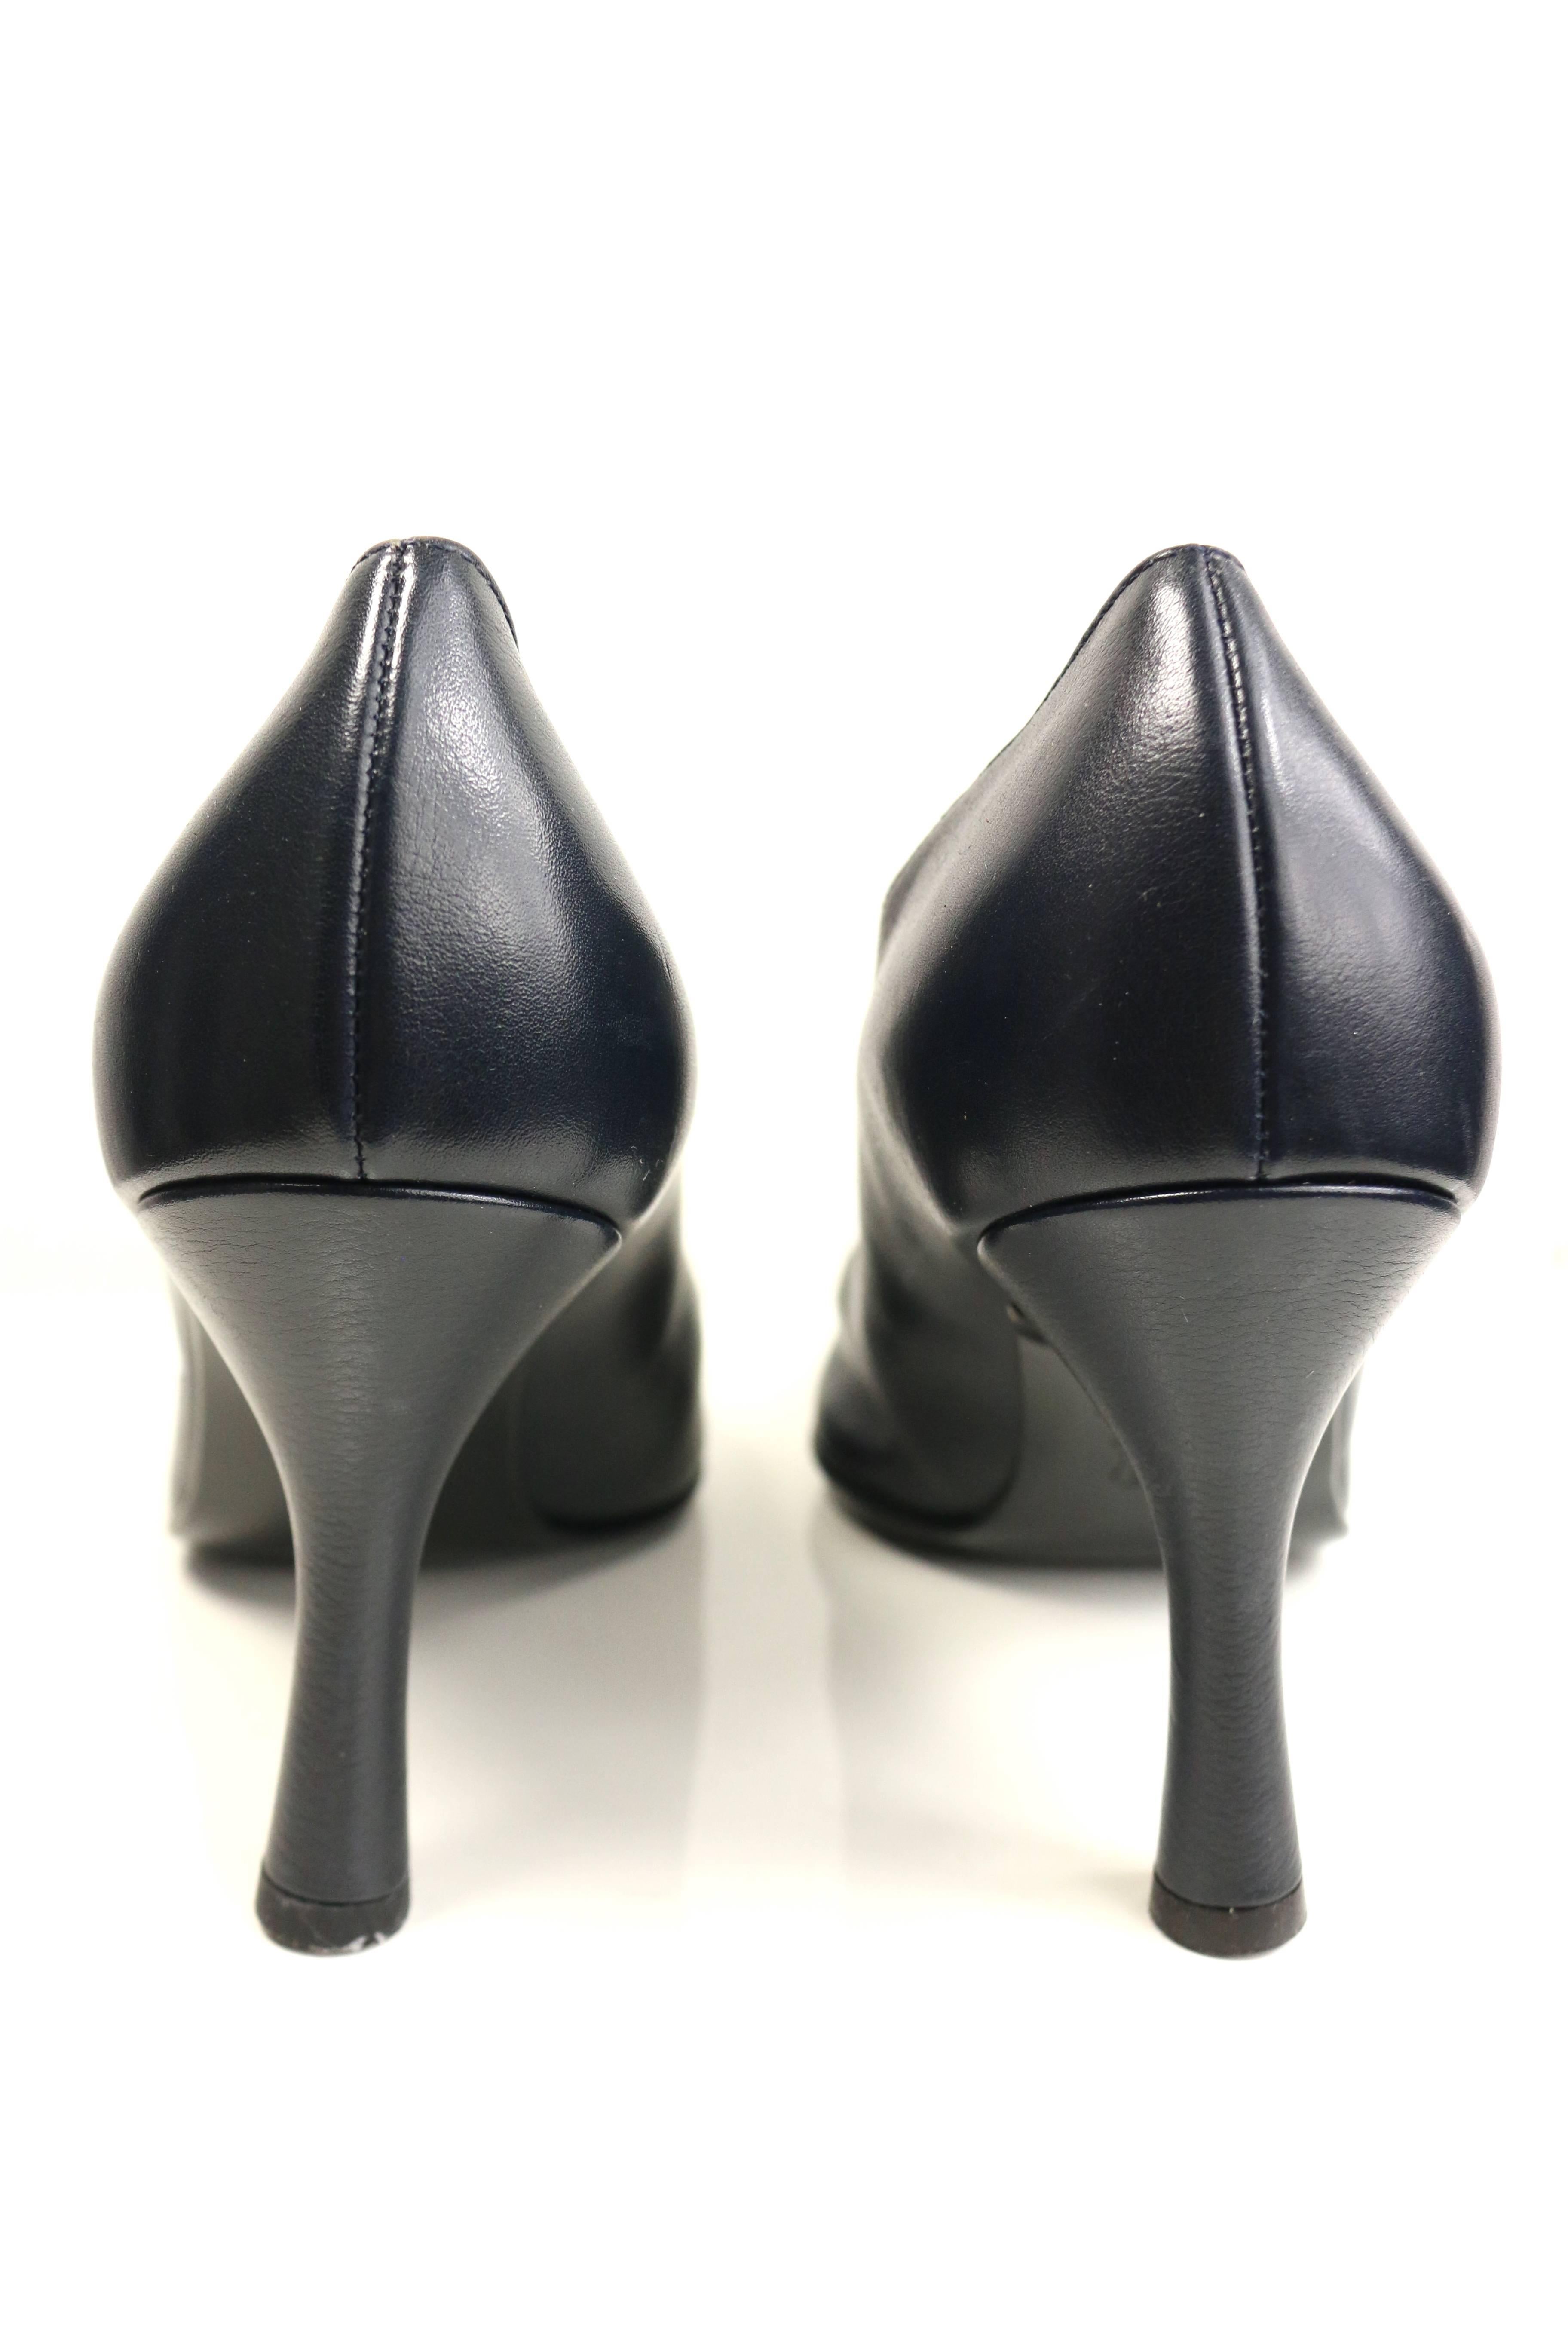 Noir Chaussures à talons « Méduse » Gianni Versace en cuir bleu marine foncé et nacre dorée en vente